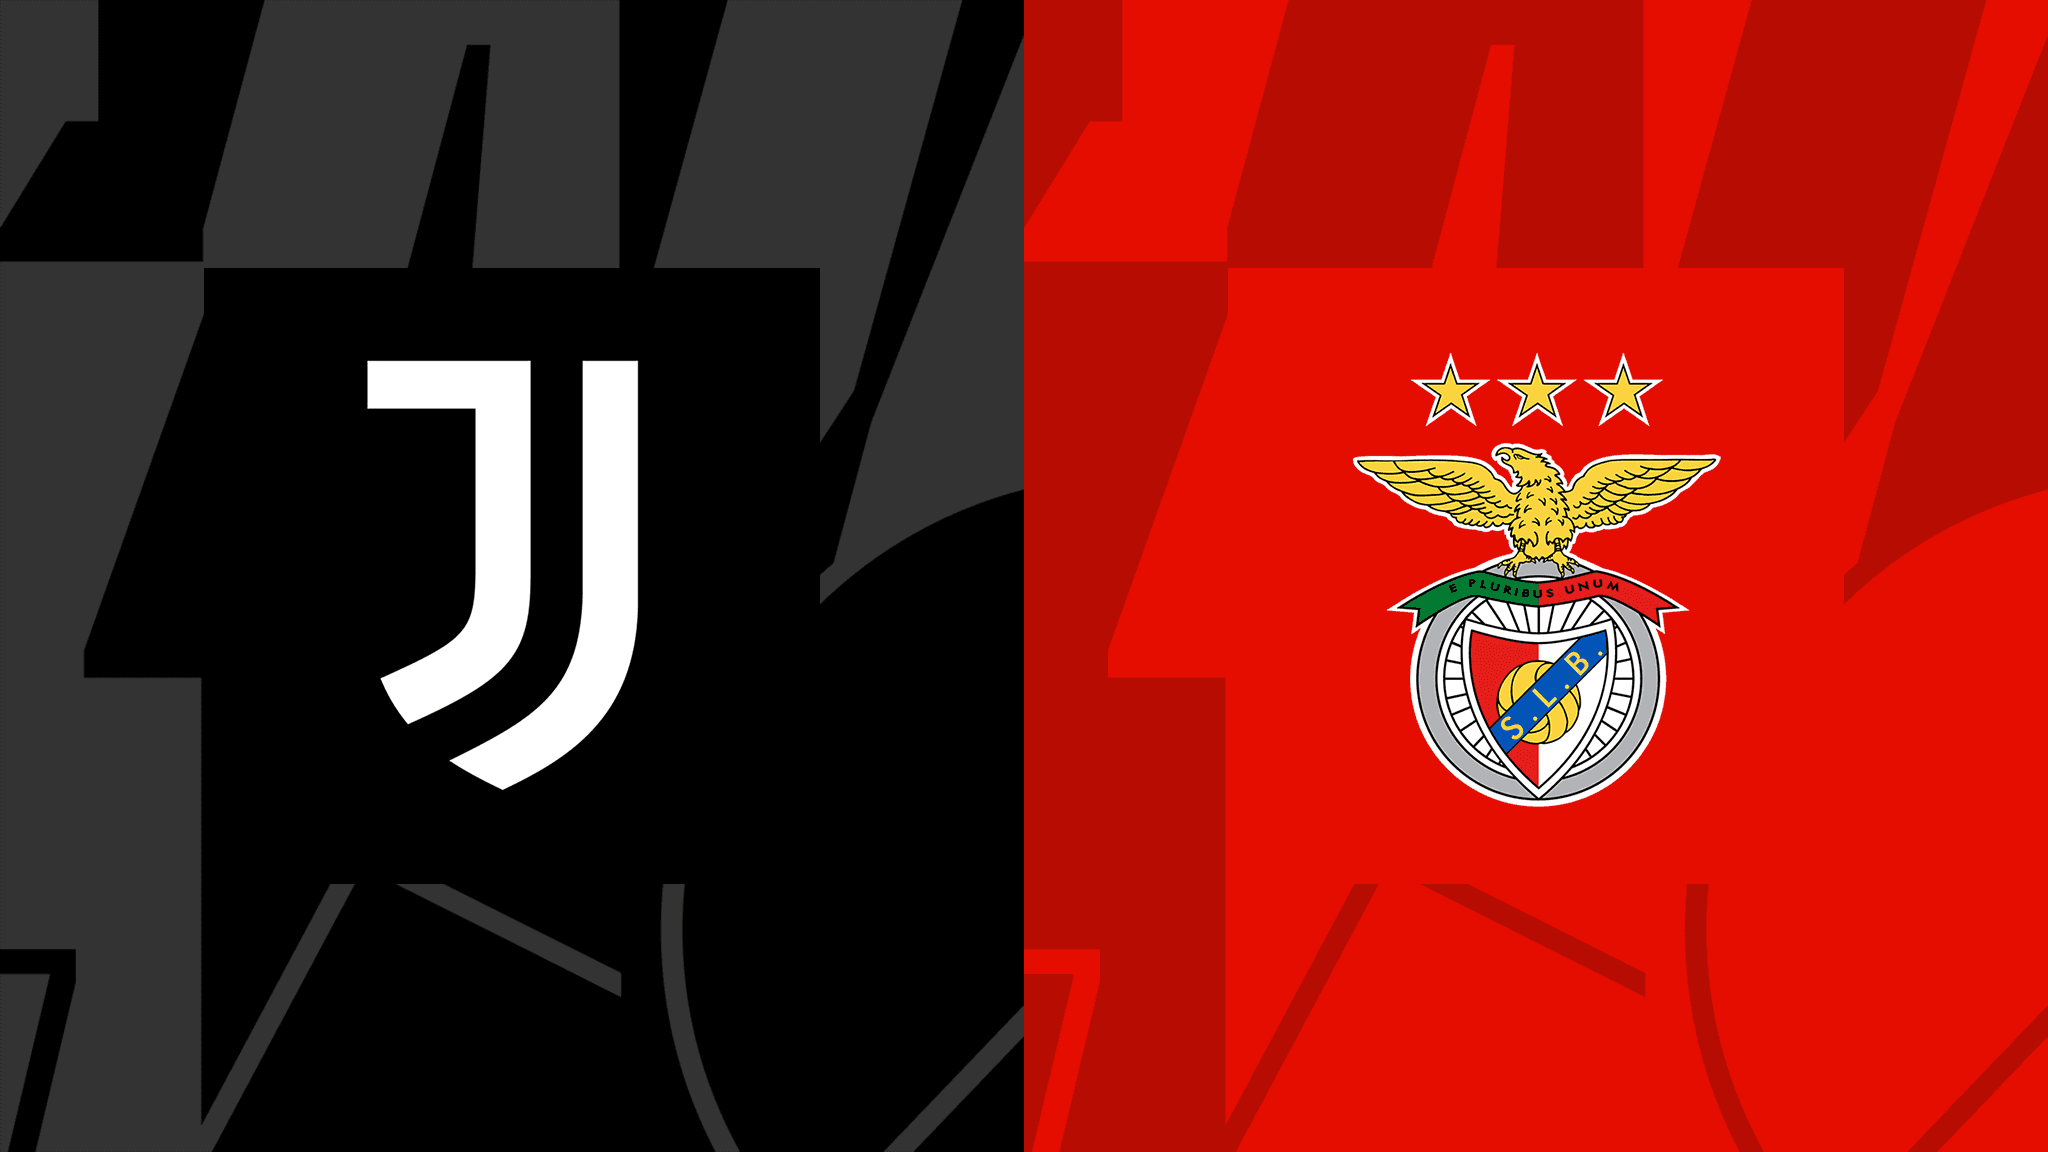 Champions League, Juventus-Benfica: pronostico, probabili formazioni e quote (14/09/2022)